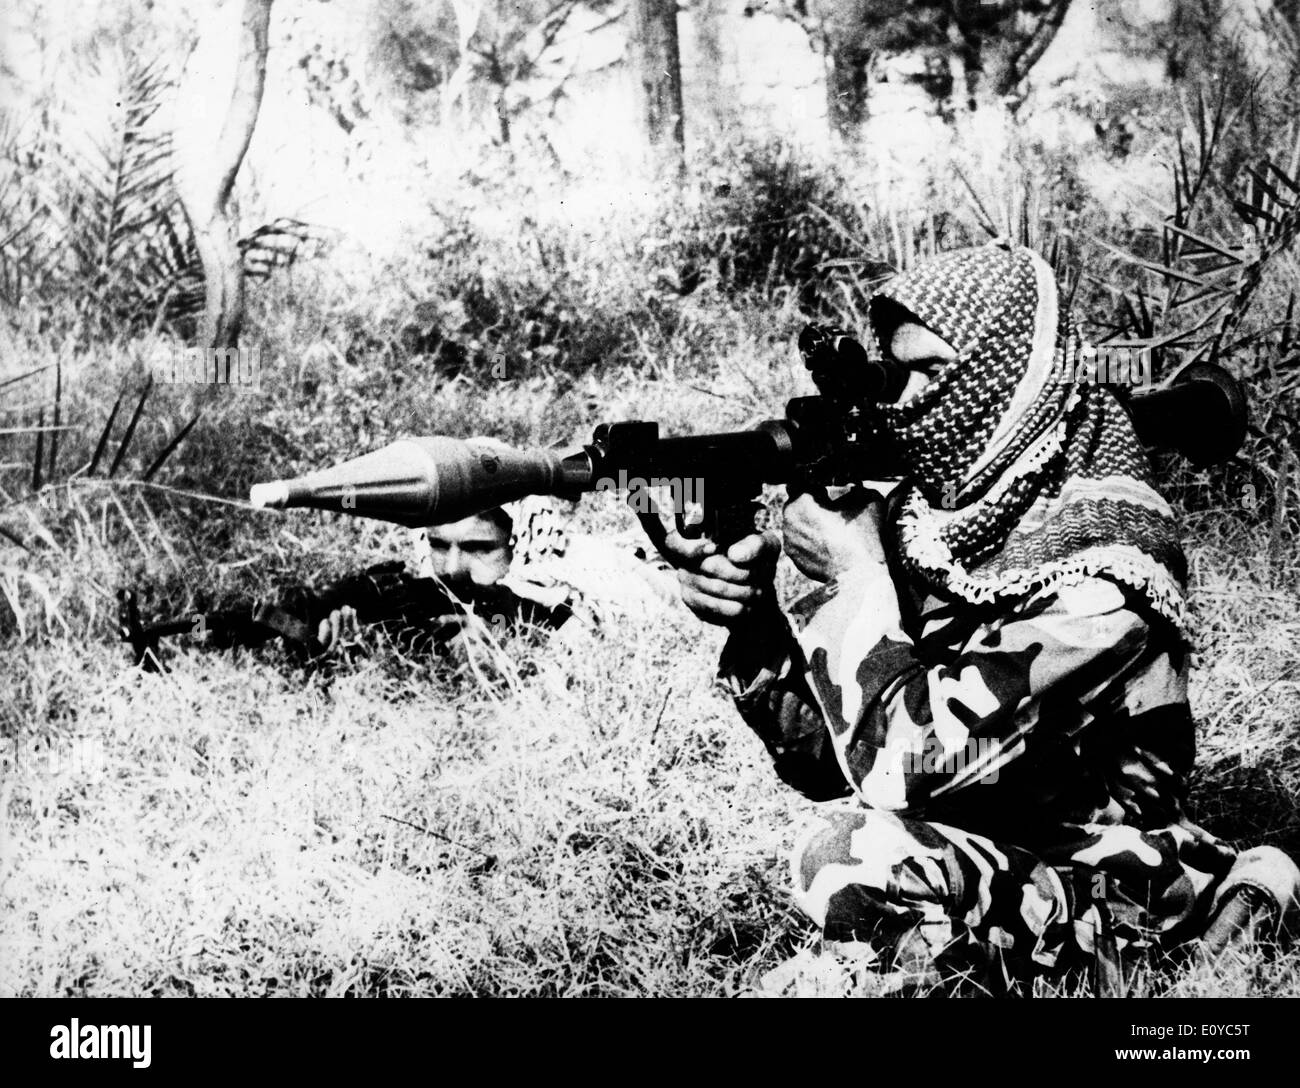 Commander fires gun on Lebanon border Stock Photo